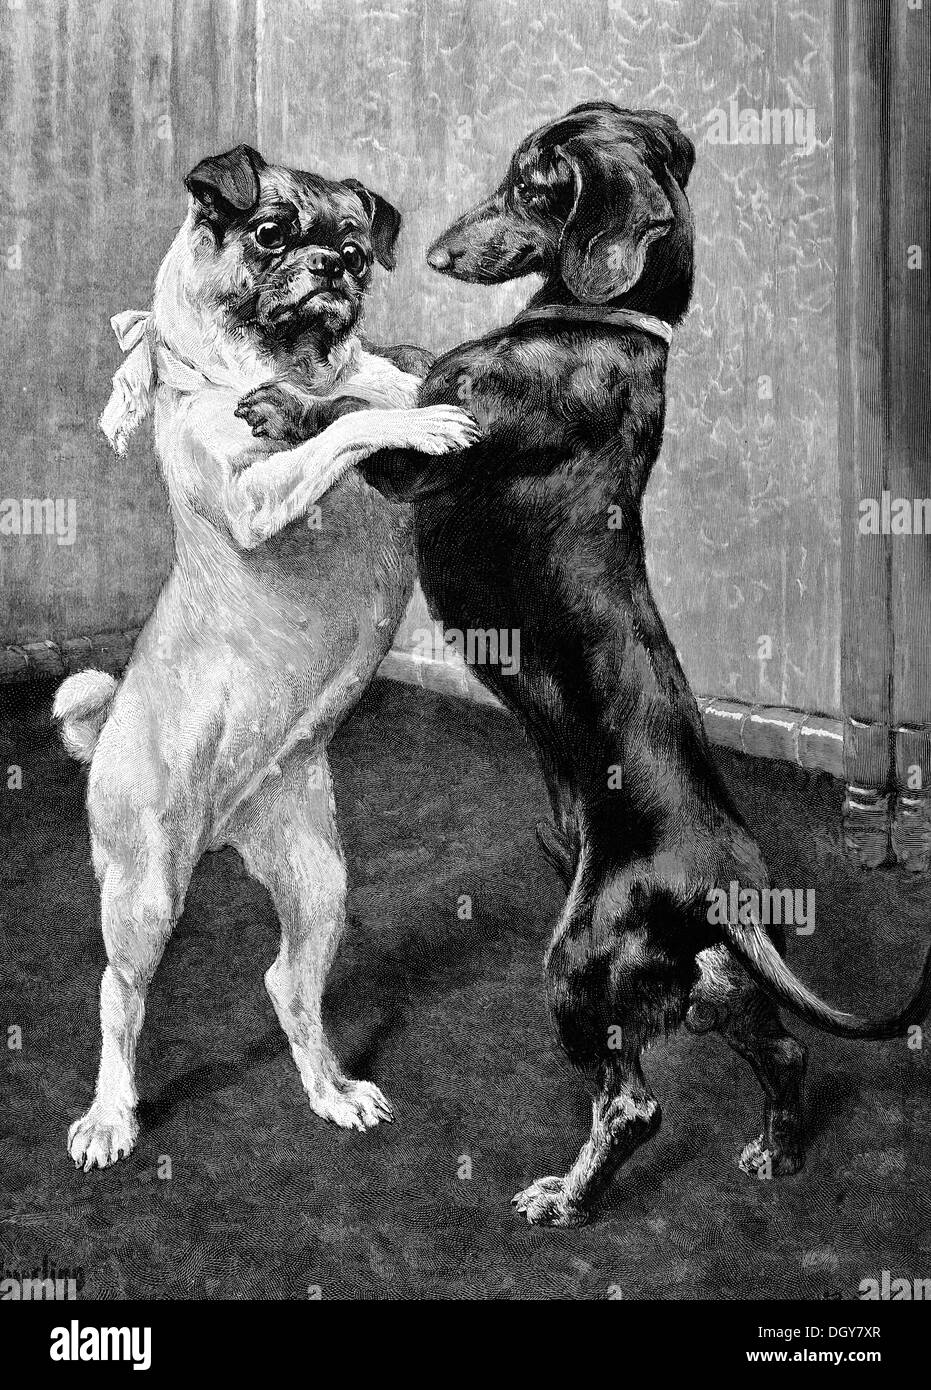 La réunion après la fin de l'interdiction des chiens, une illustration de l'Moderne Kunst dans Meisterholzschnitten annuaire, 1900 Banque D'Images